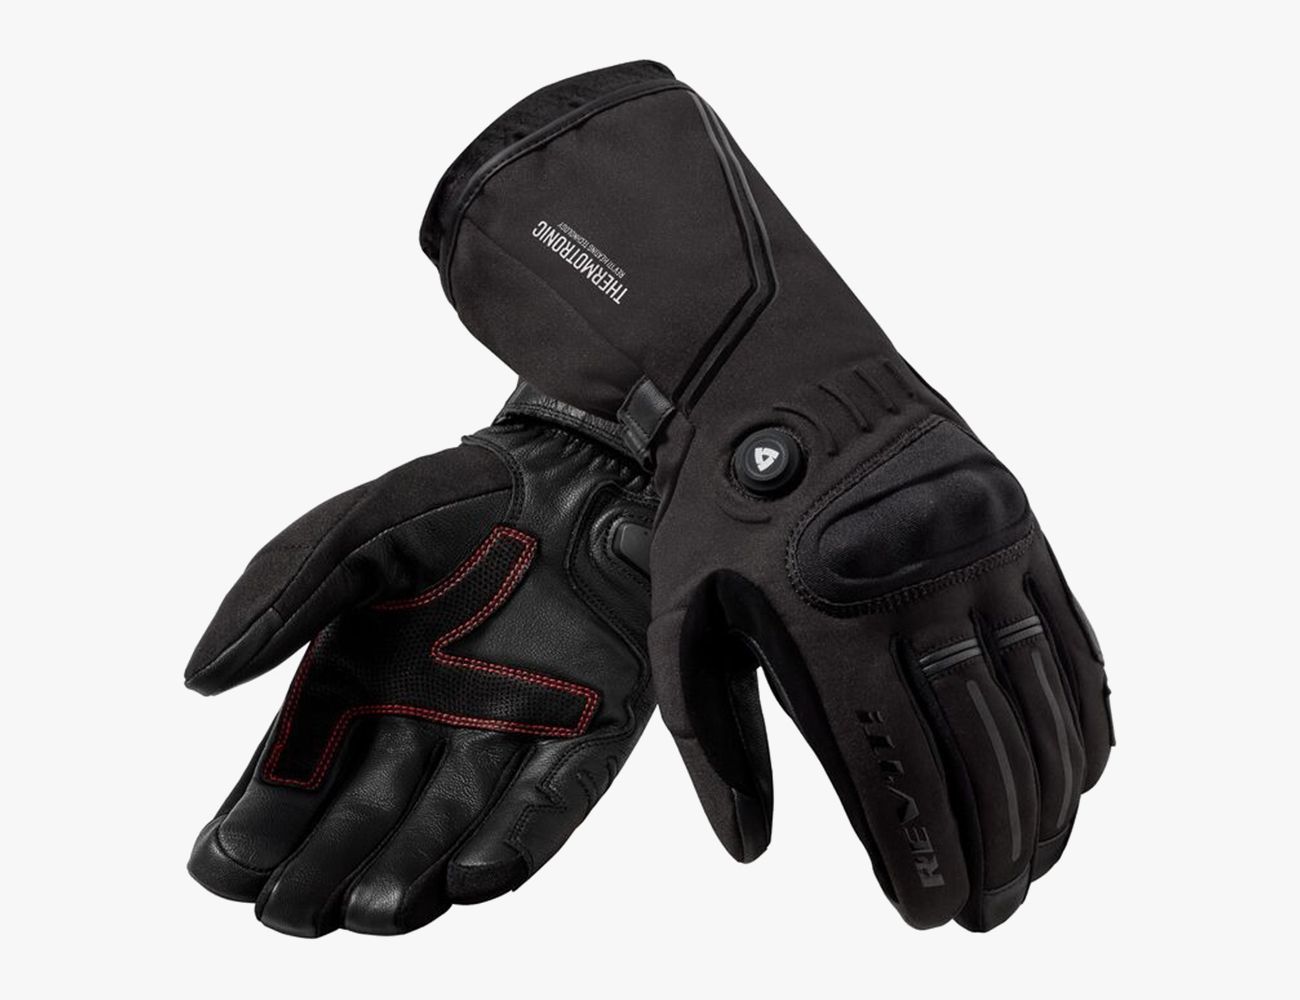 Blade Blade Leather Best Waterproof Thermal Warm Winter Motorcycle Motorbike Gloves 